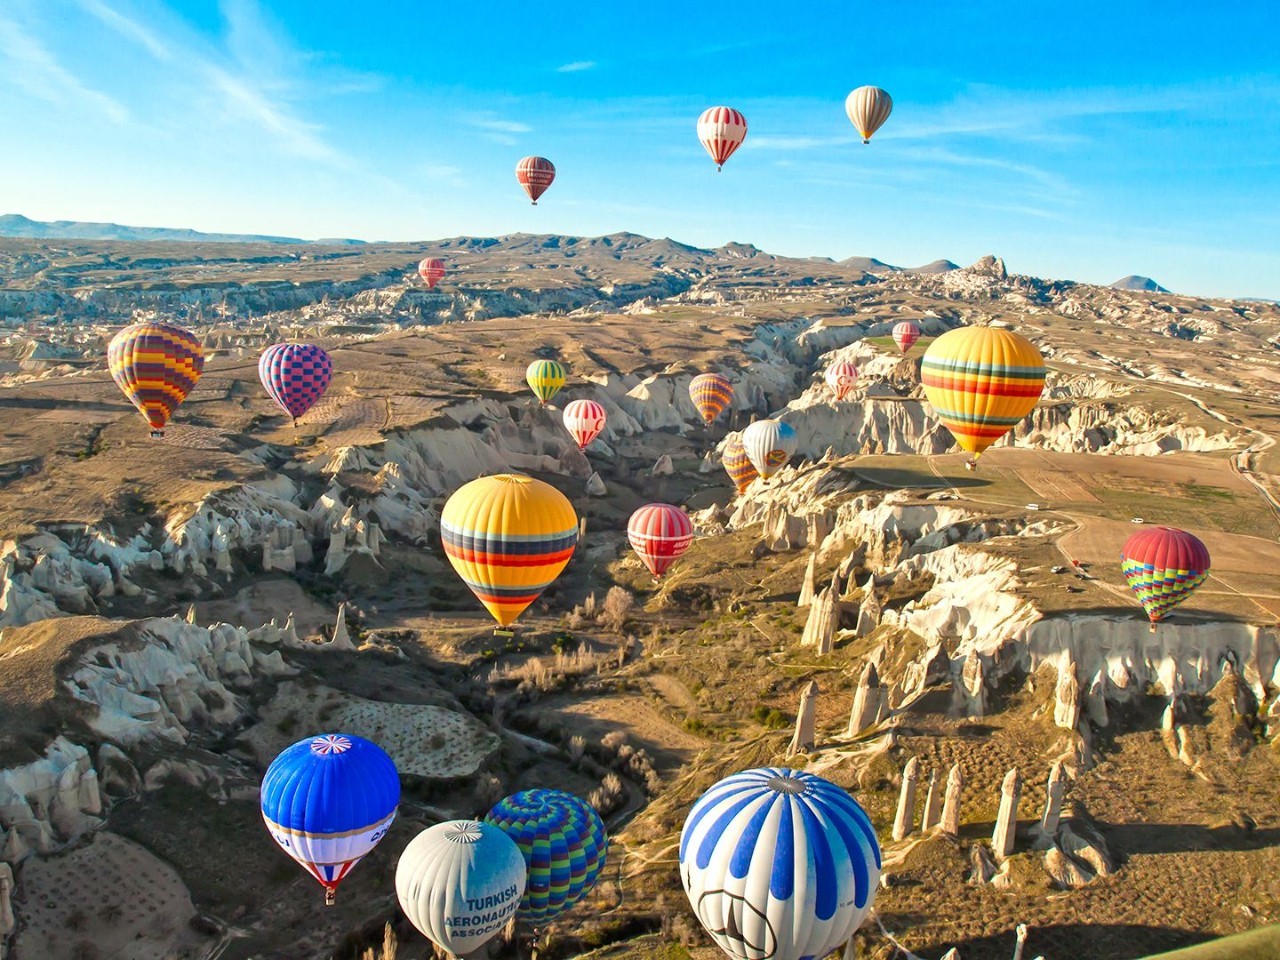 土耳其,在外星的热气球之旅